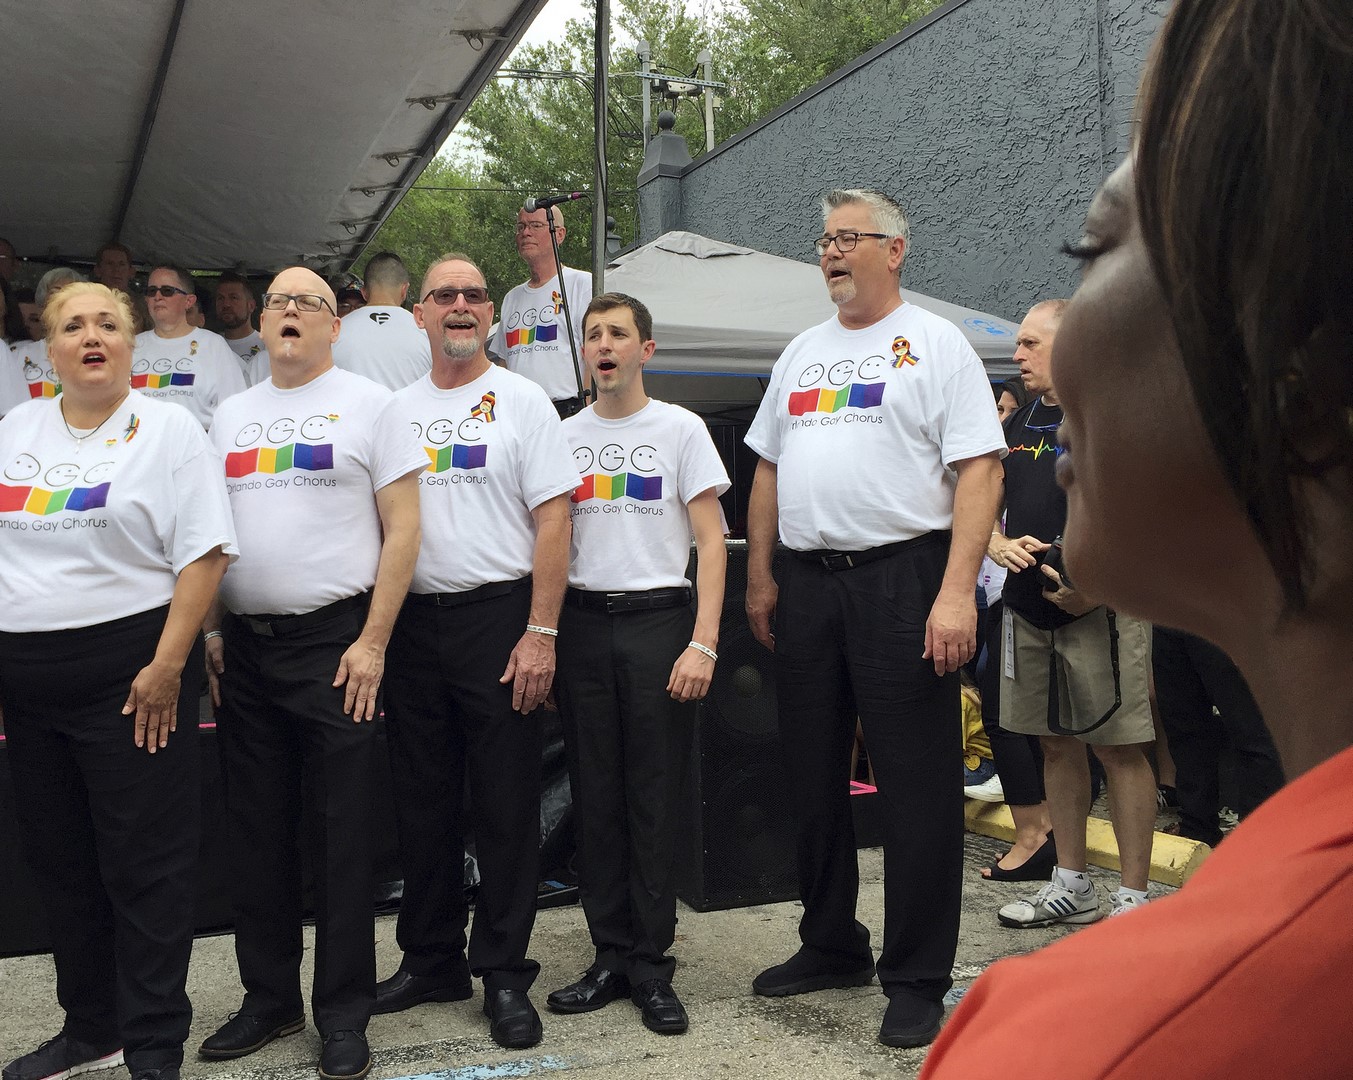 Conmemoran primer aniversario de ataque a bar Pulse de Orlando